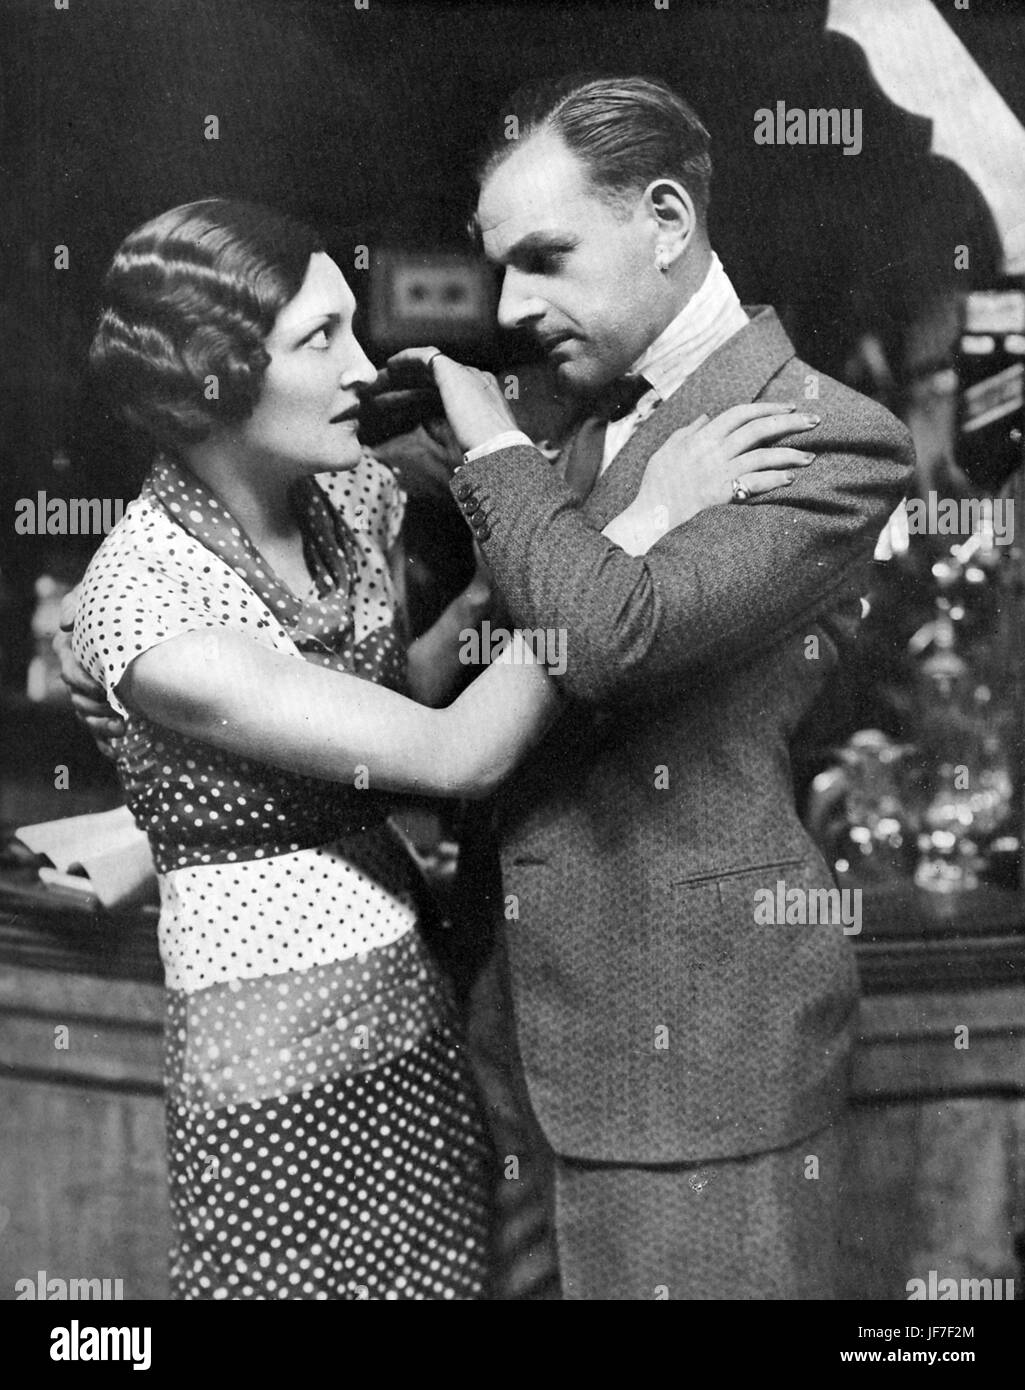 "El Viejo" por Edgar Wallace. Título reza: "Keller: "Si abres la boca, tendré que mariposa.'1931 London Production con Frances Doble (1902-1969) y Jack Melford (1899-1972). ( Wyndham's Theatre el 15 de mayo, 1931). Foto de stock